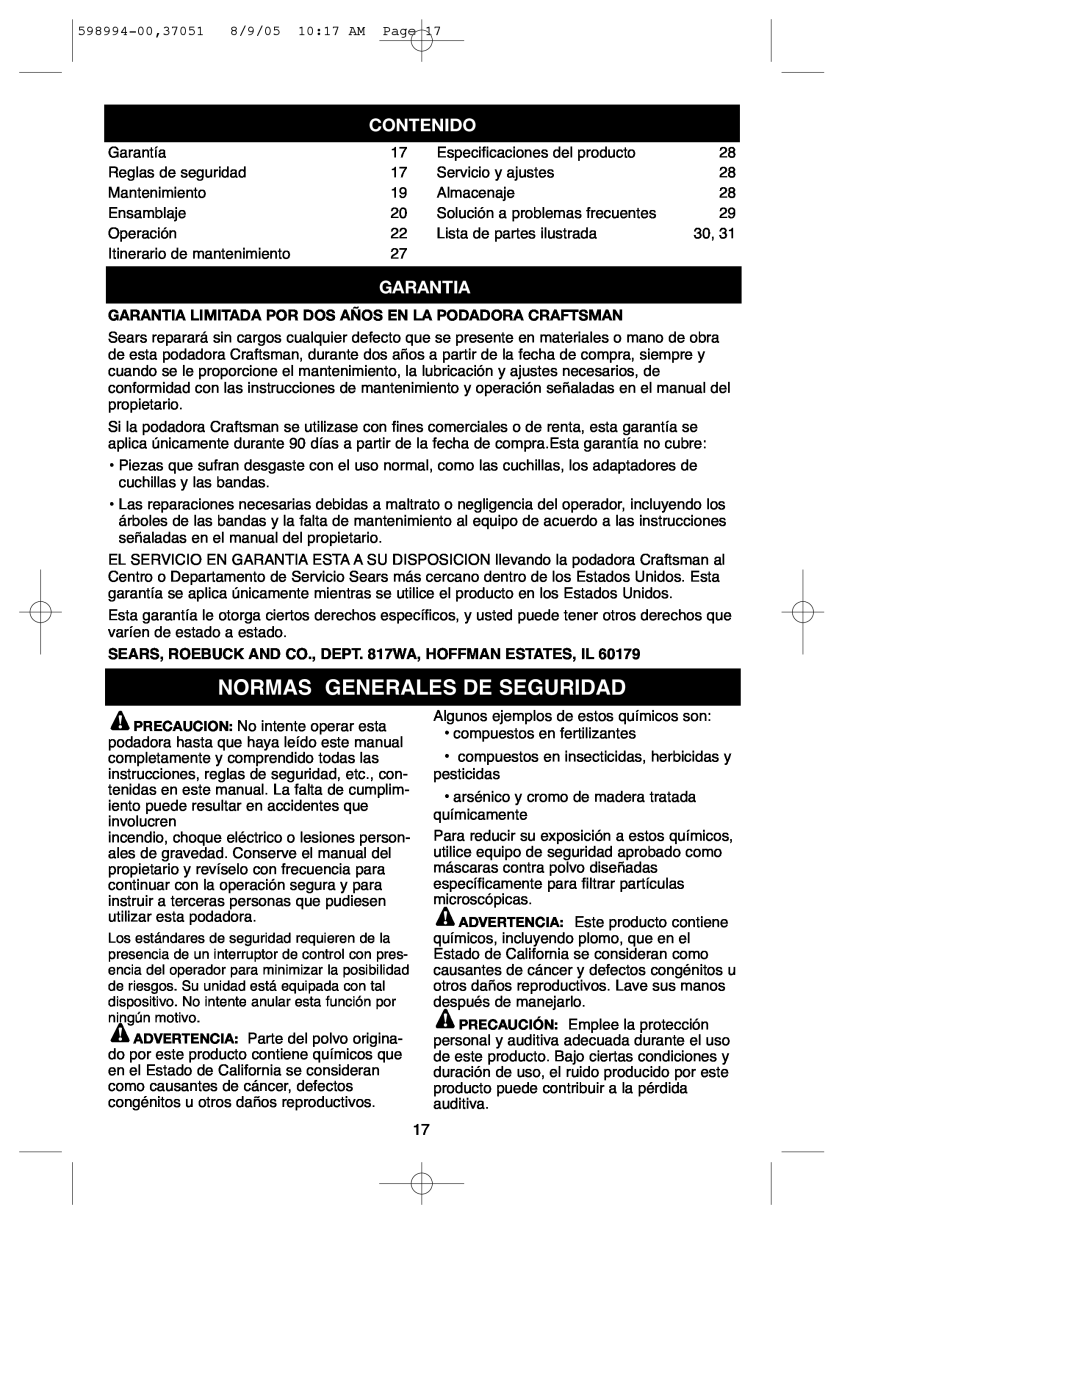 DeWalt 900.37051 instruction manual Normas Generales De Seguridad, Contenido, Garantia 